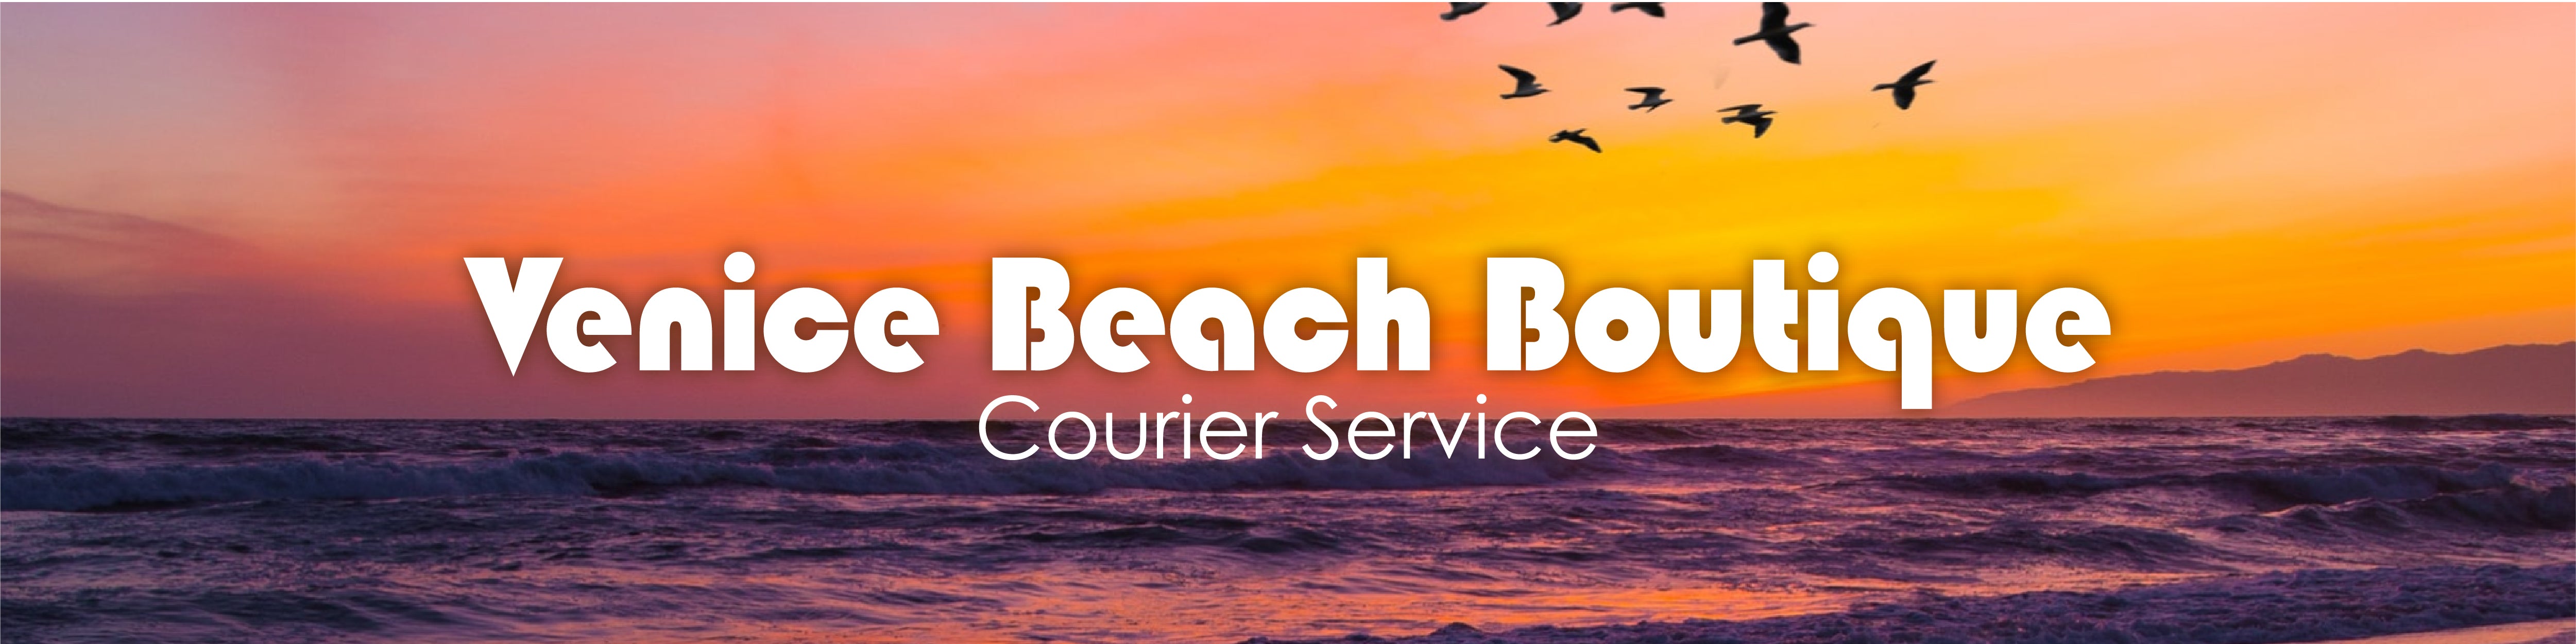 Venice Beach Boutique - Courier Service